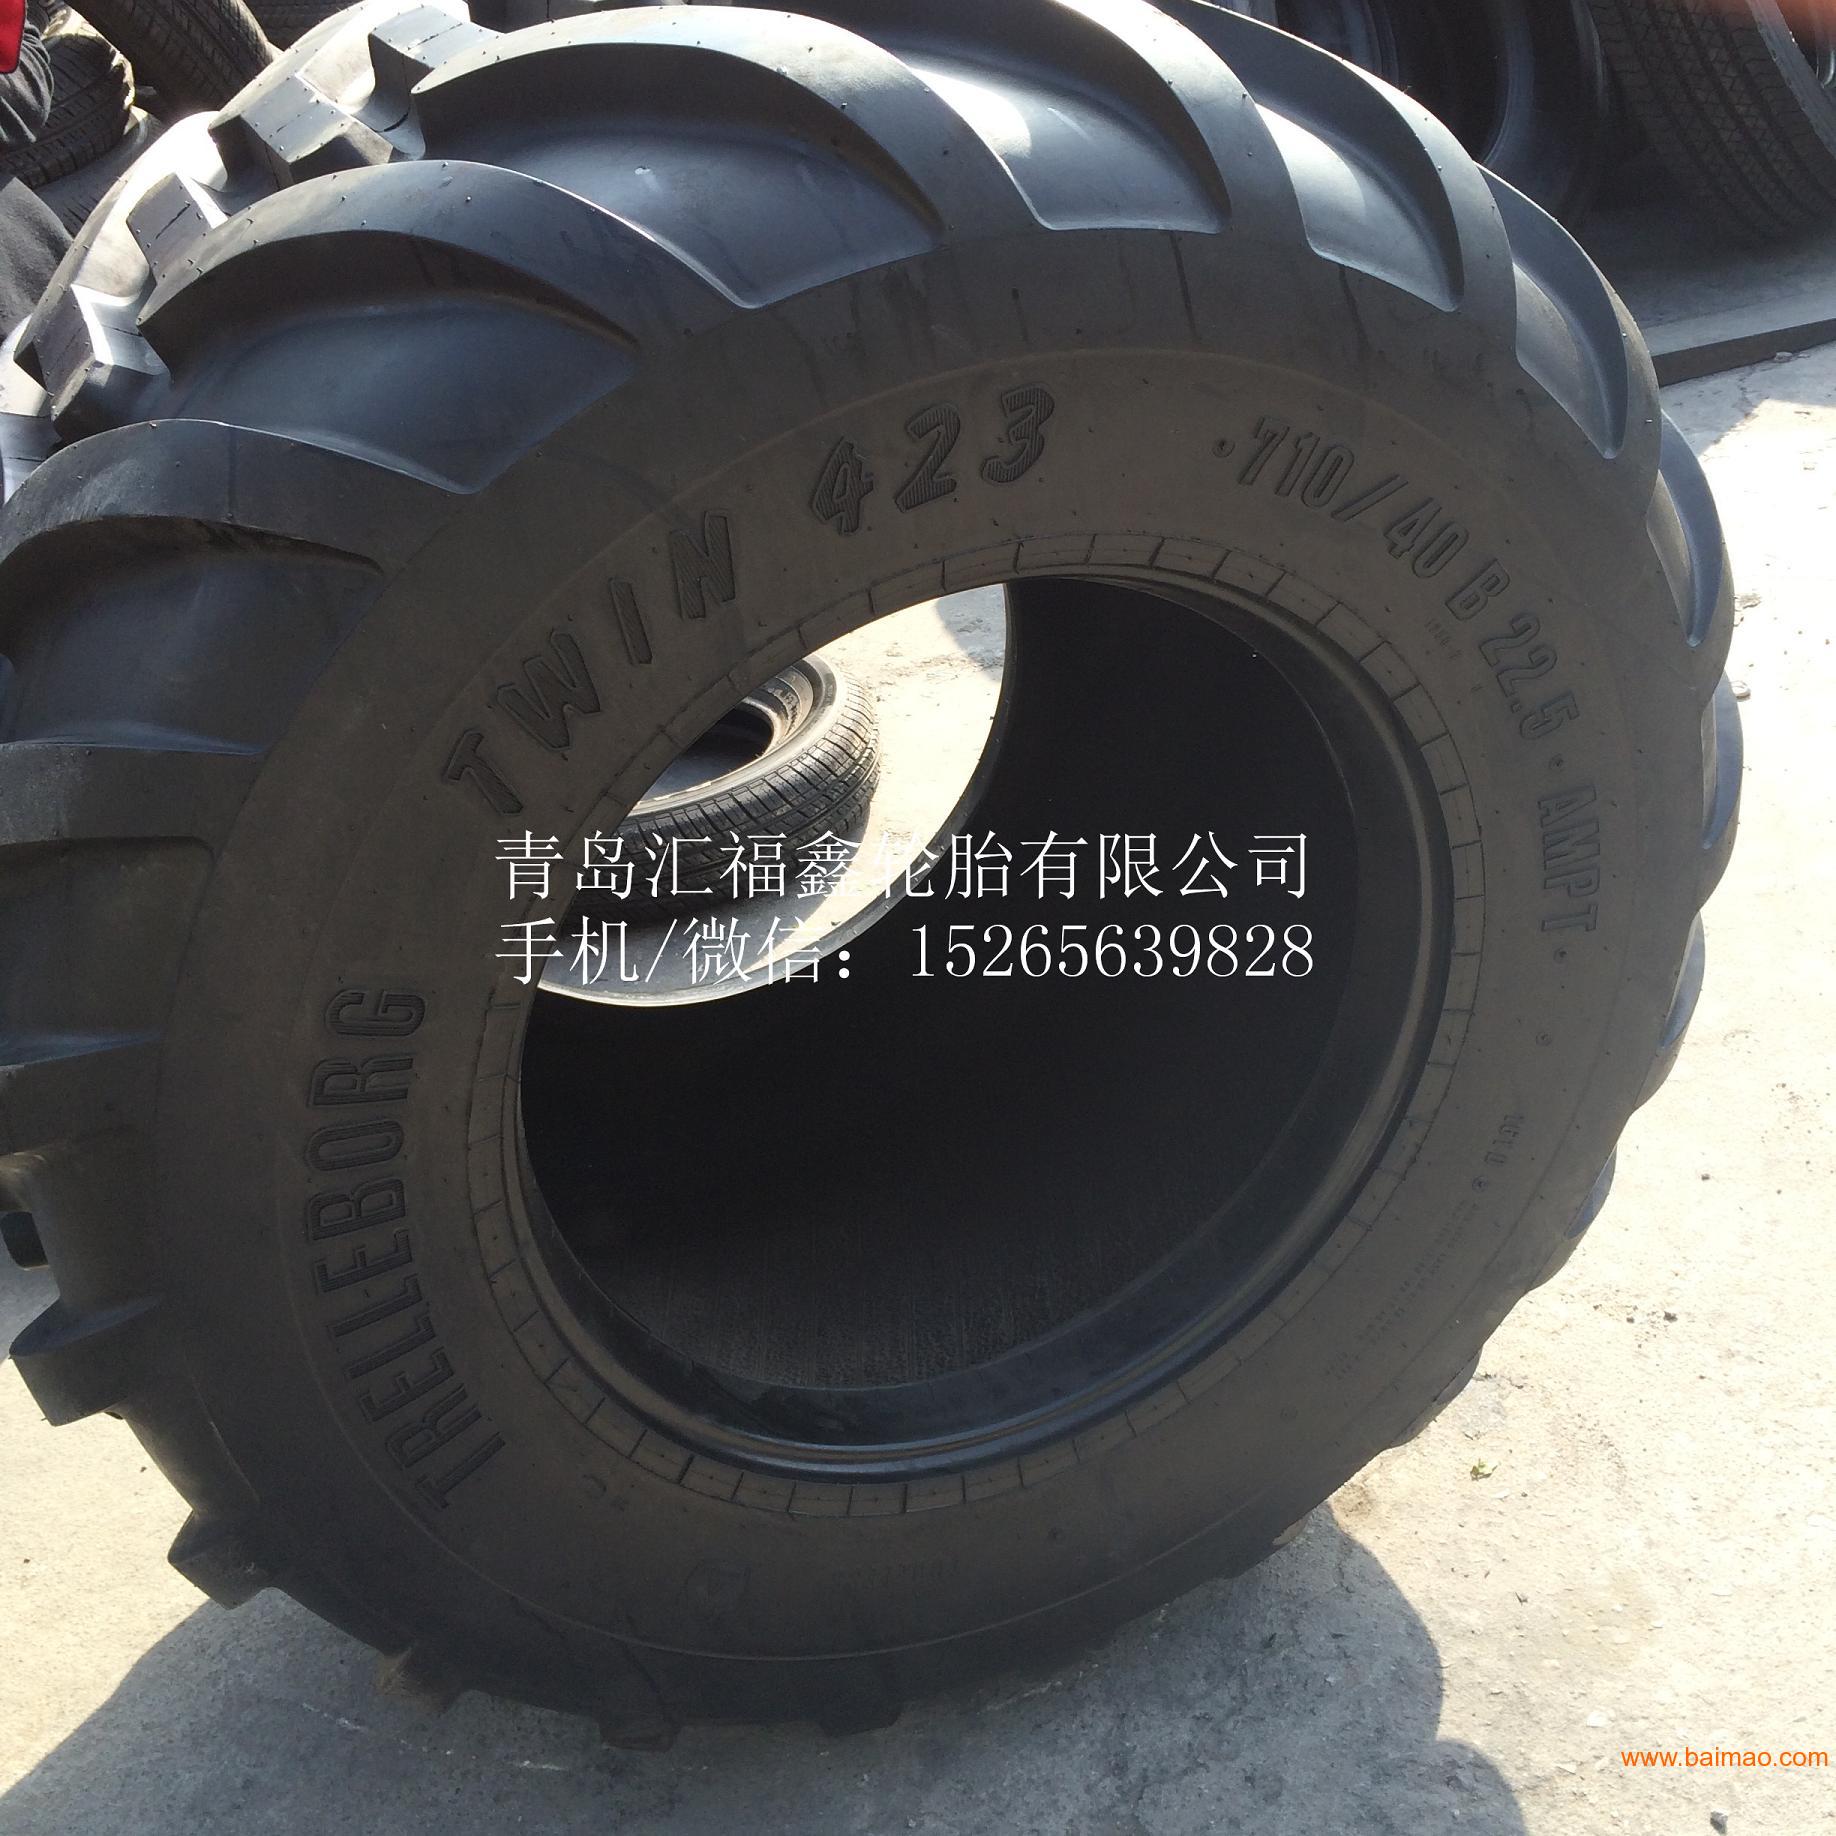 供应710/40B22.5农用轮胎高悬浮轮胎